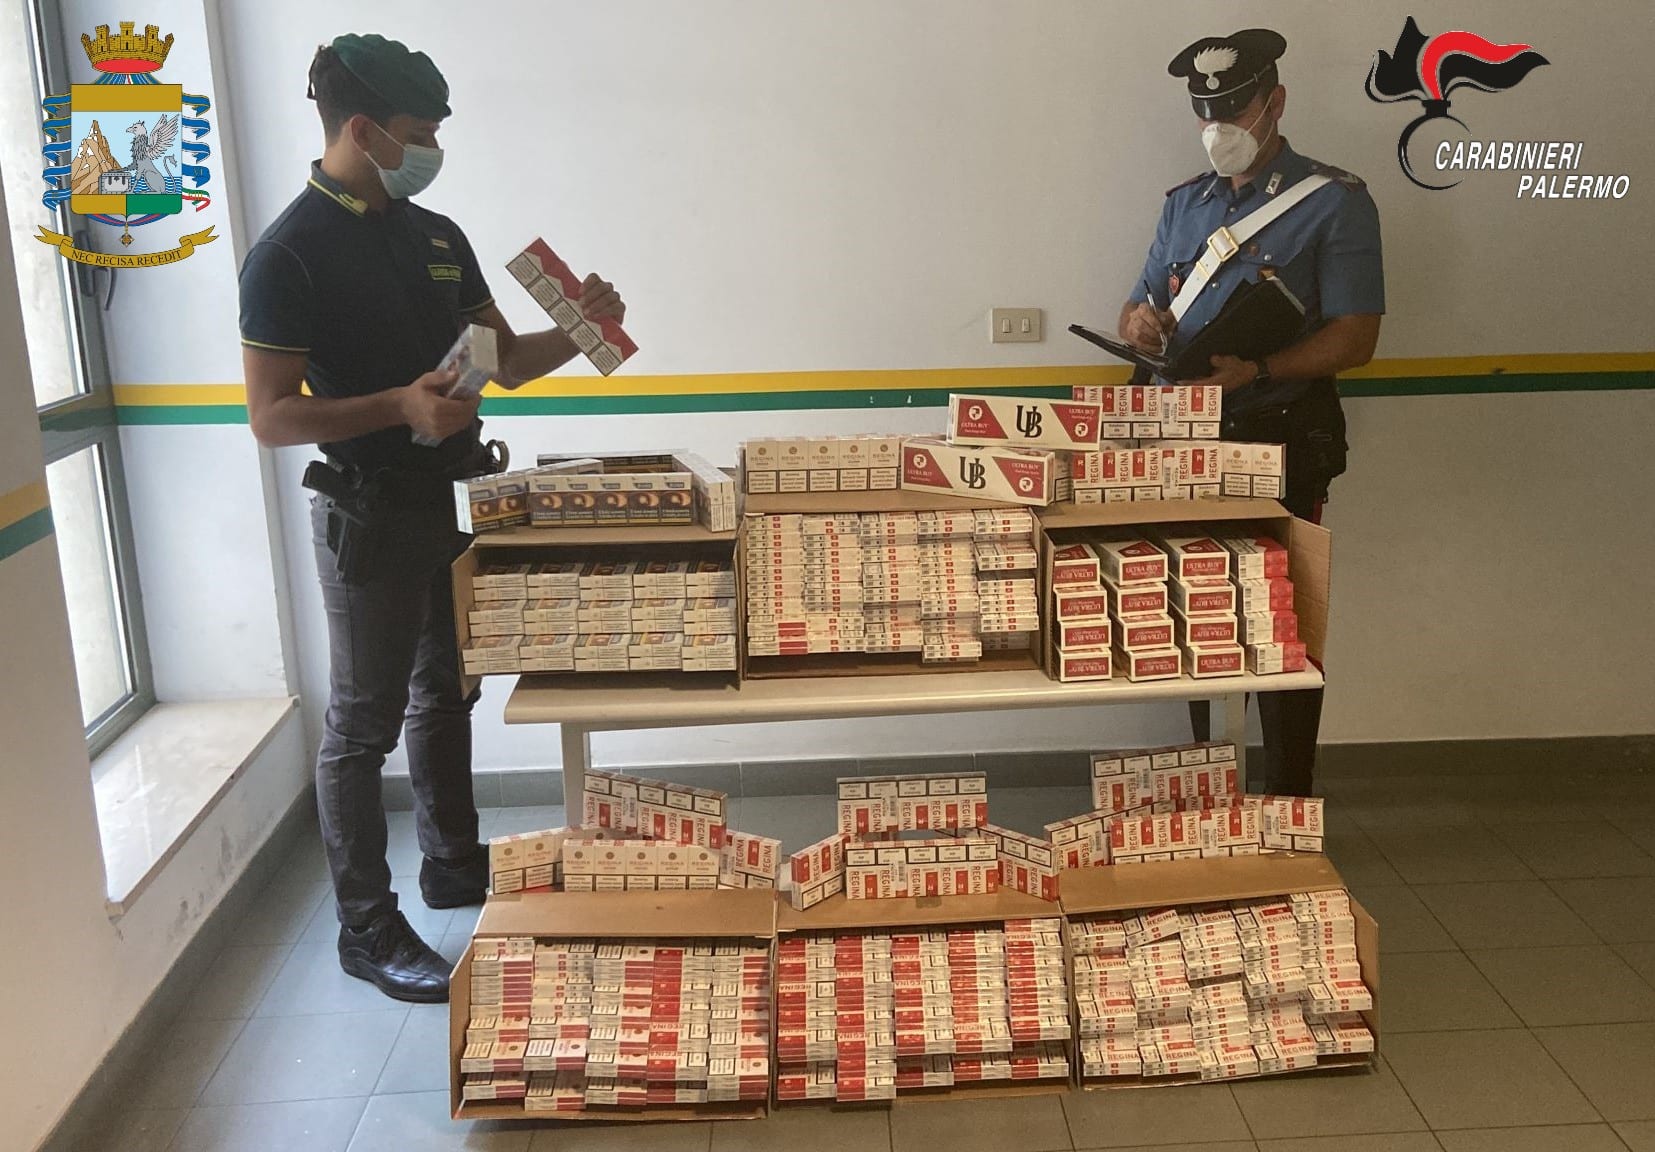 Beccato con le sigarette di contrabbando, 43enne arrestato dalla Guardia di Finanza: disposti i domiciliari